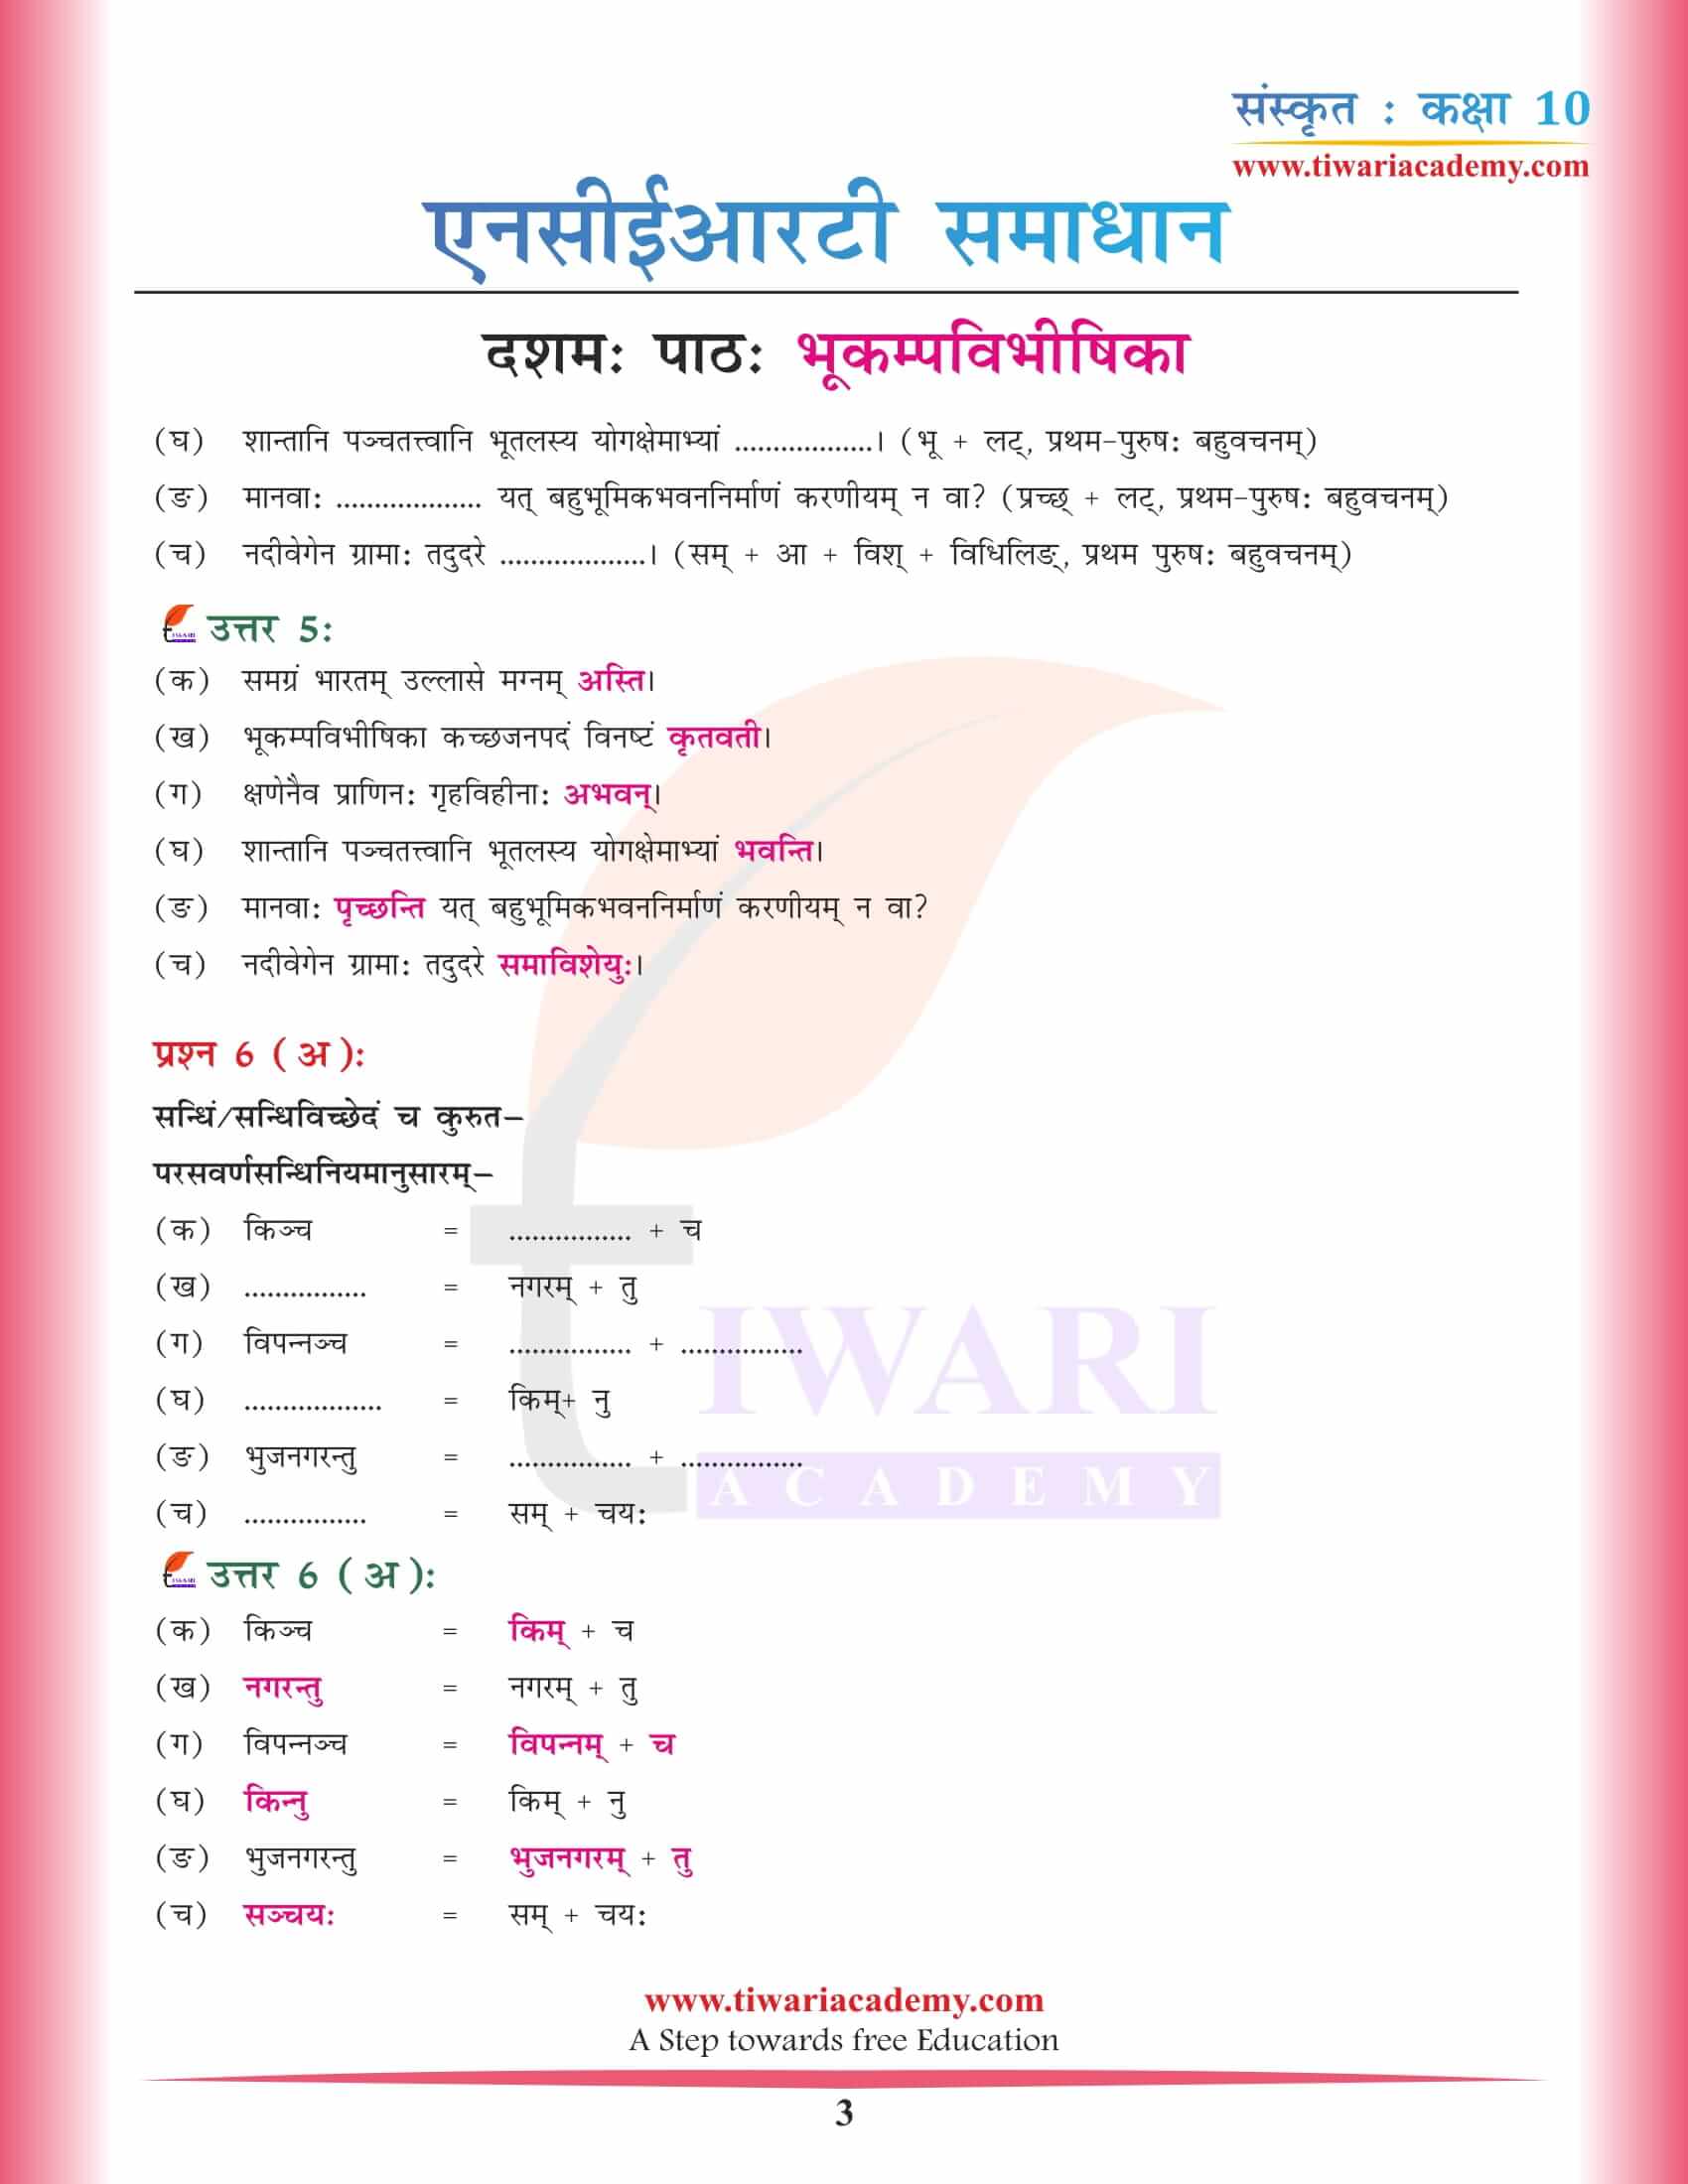 कक्षा 10 संस्कृत अध्याय 10 हिंदी में समाधान